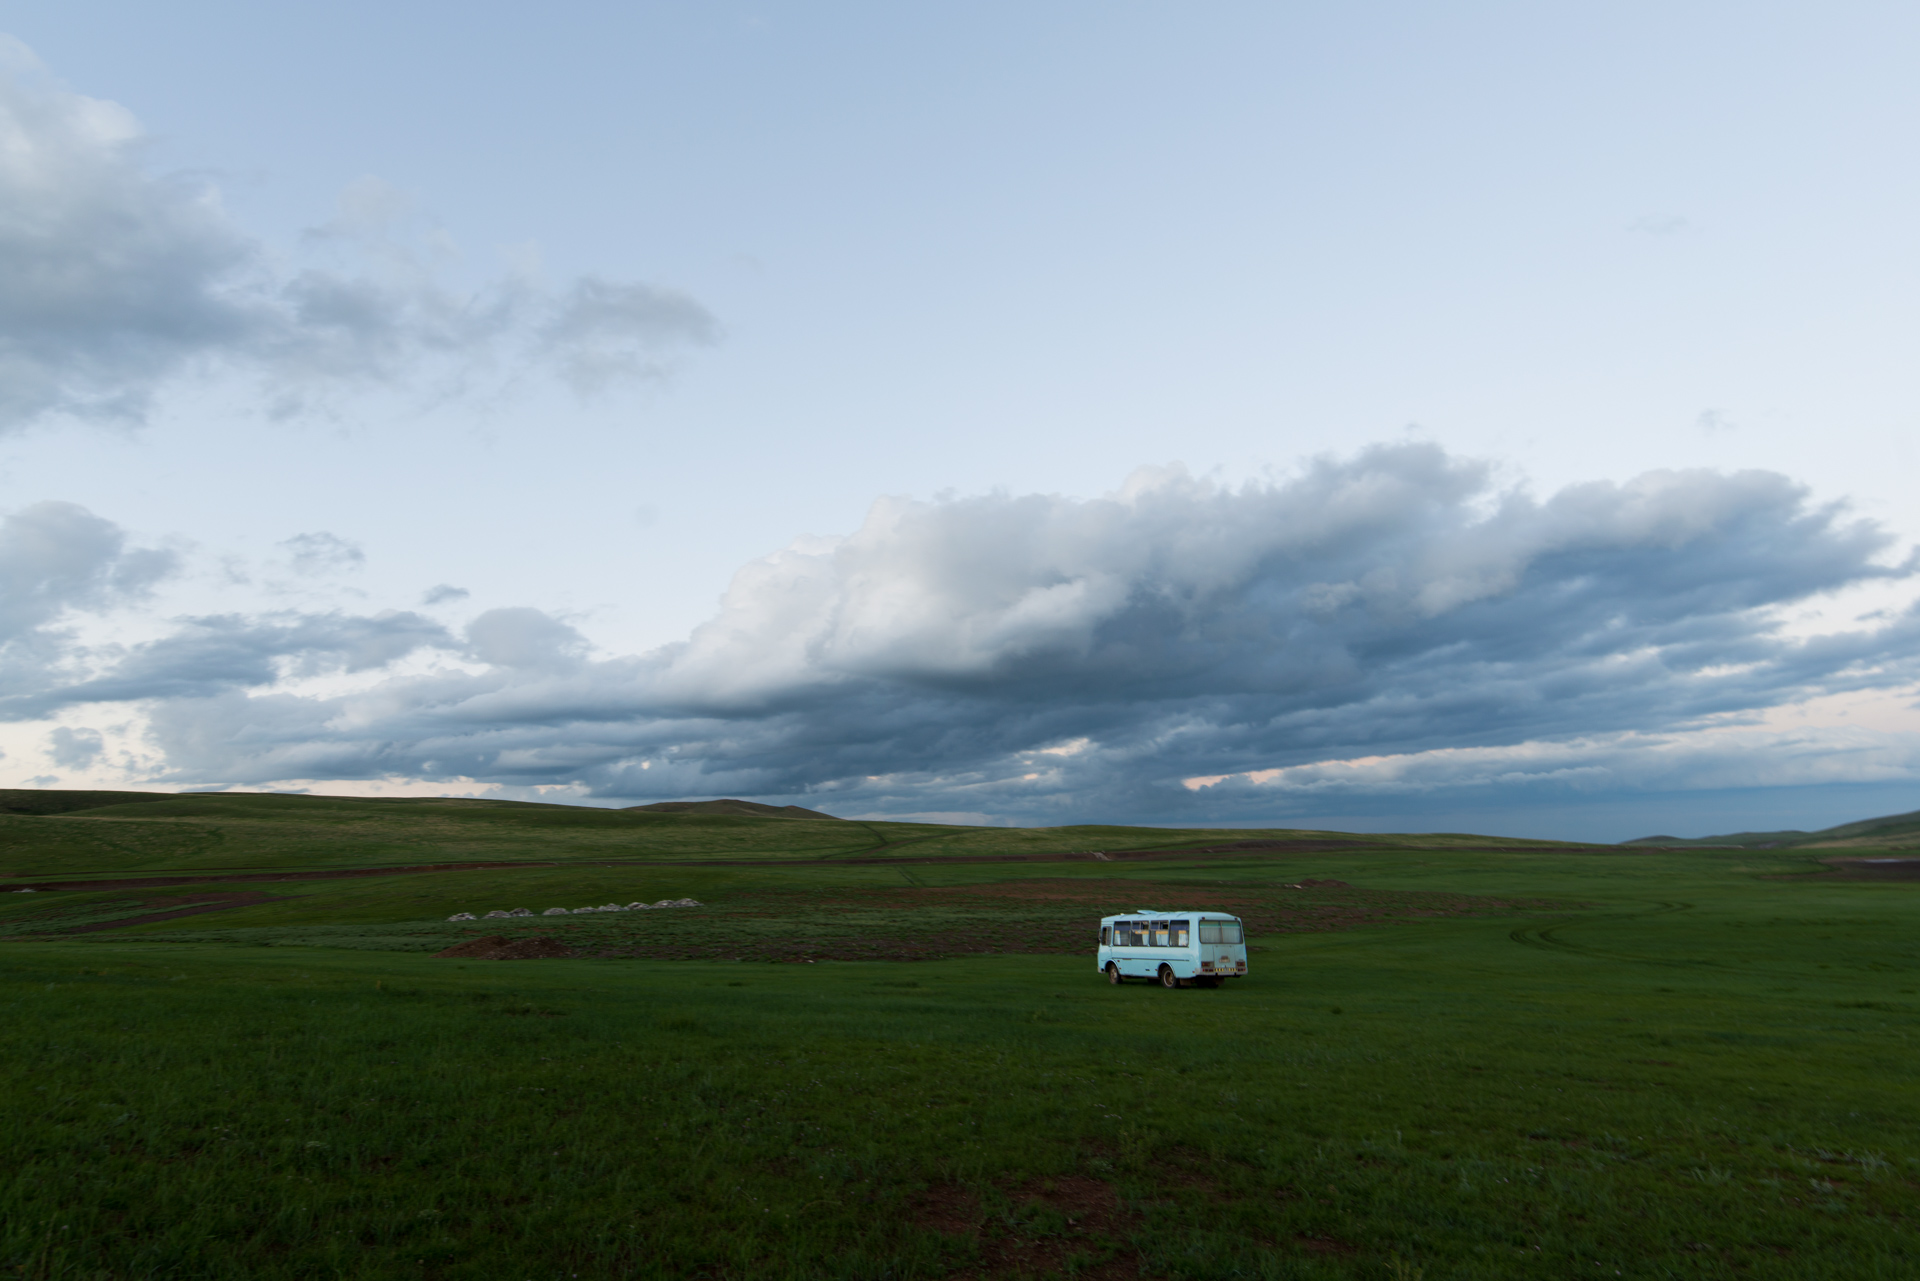 150731_375.jpg : 몽골 학습탐사 2진 사진 7월31일 ...자